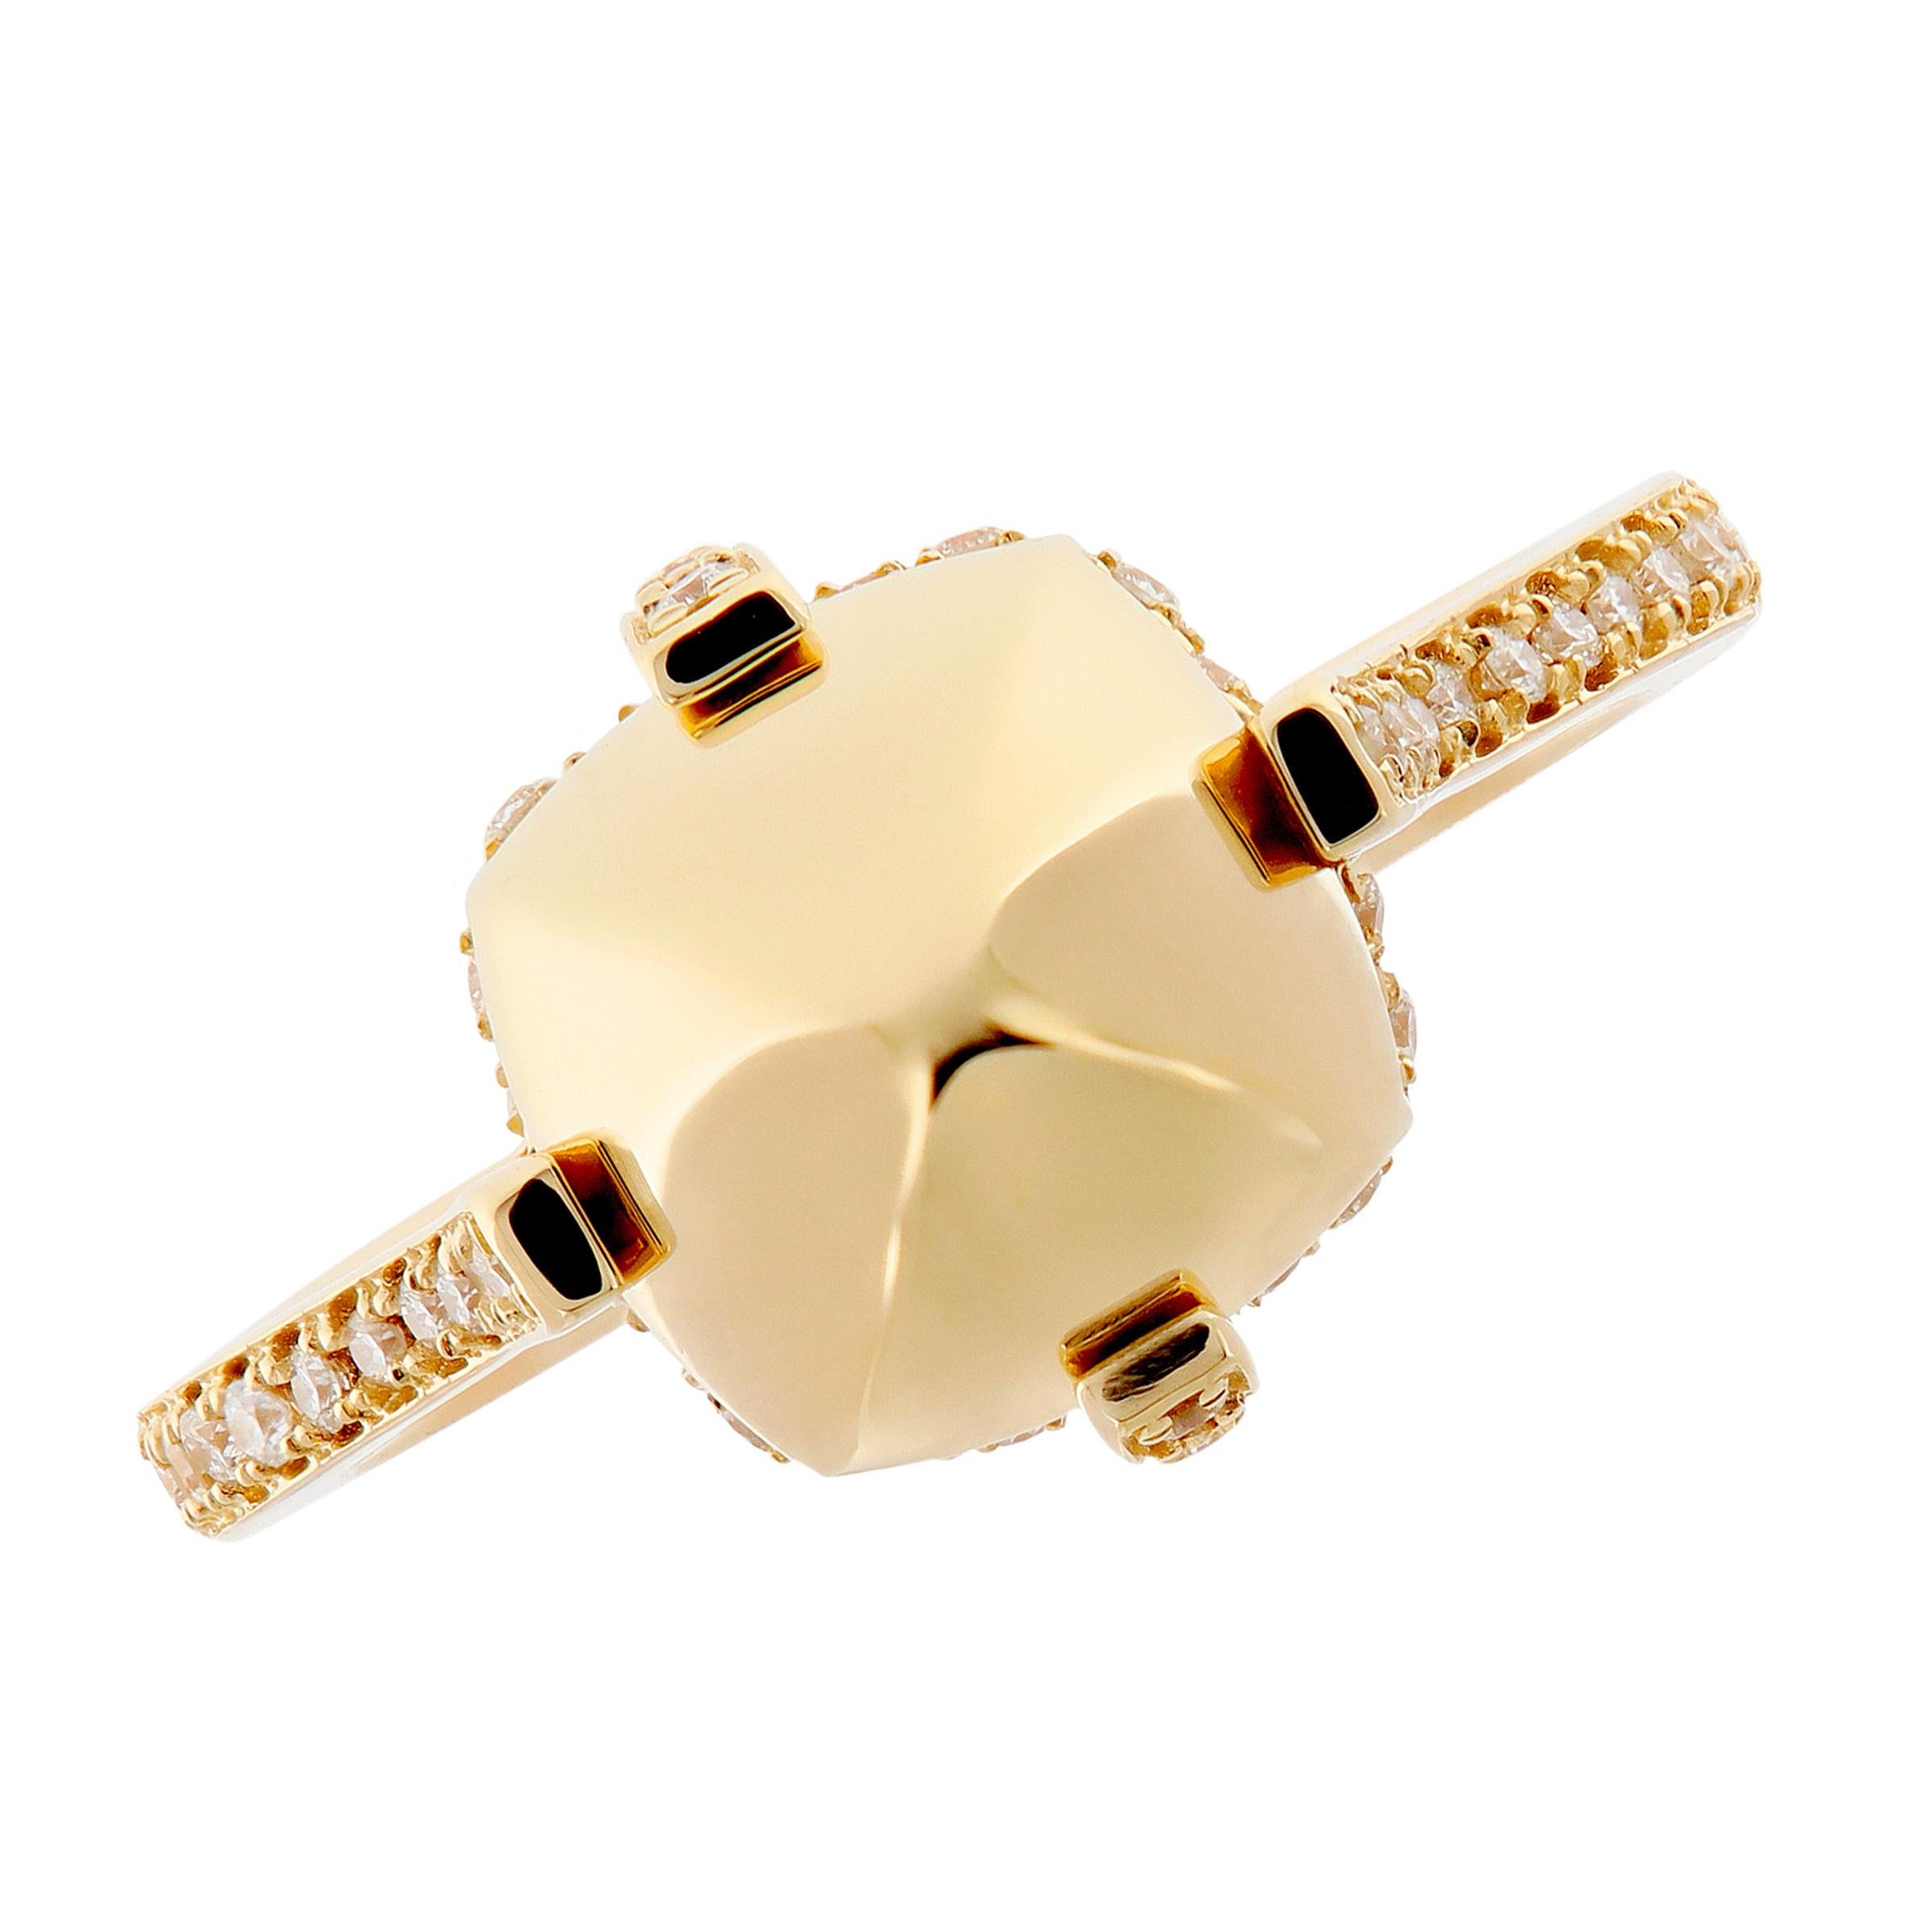 Round Cut 18 Karat Yellow Gold Surgarloaf Pave Diamond Ring by Goshwara For Sale